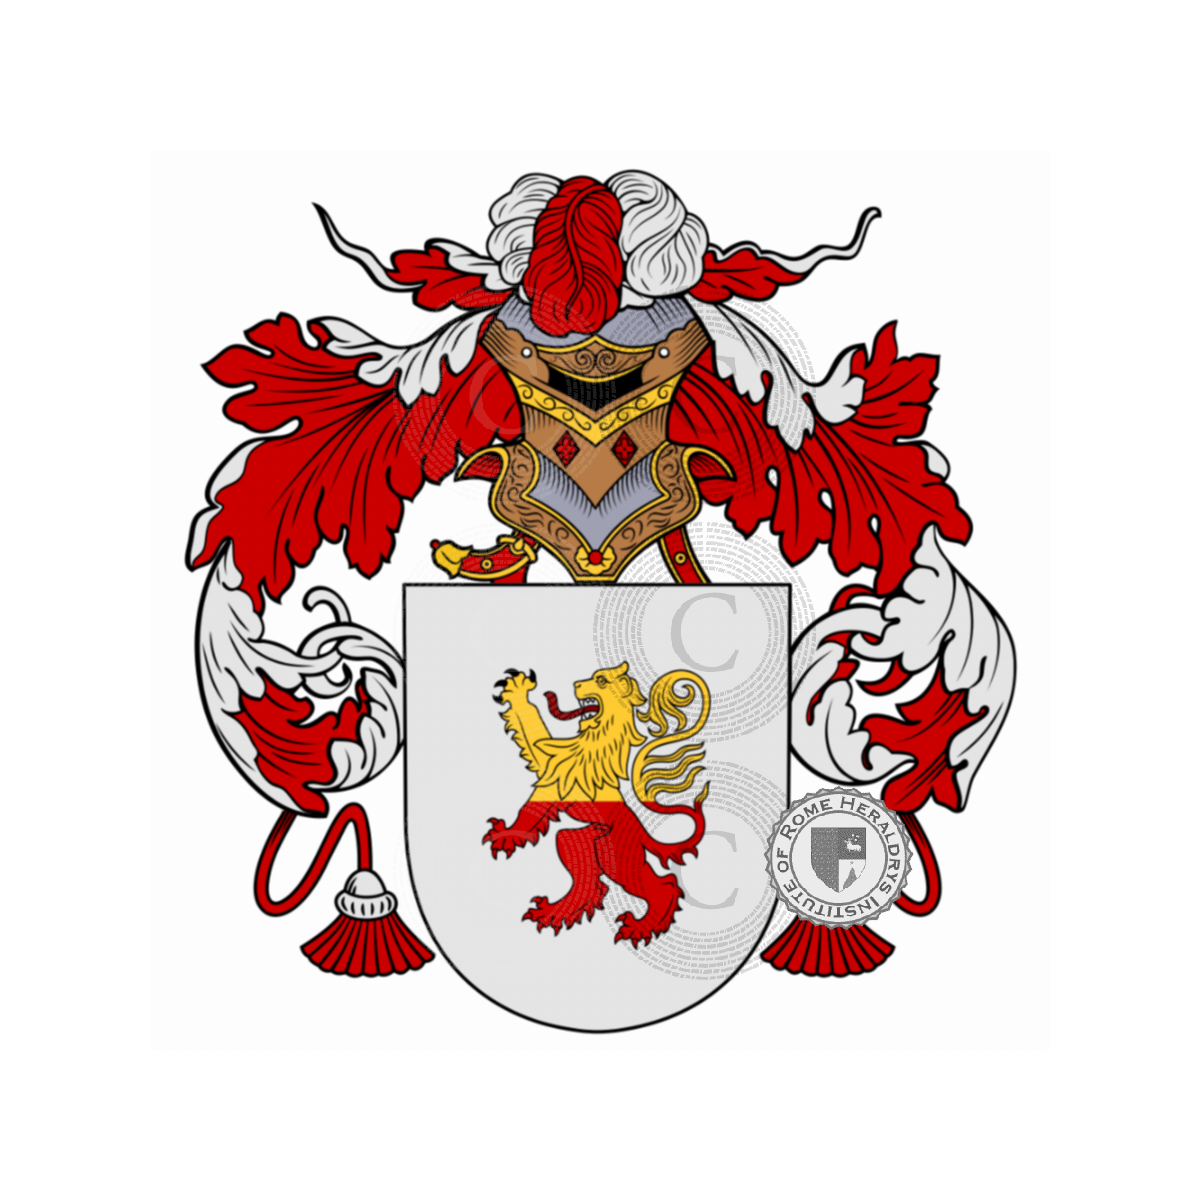 Wappen der FamilieQuadra, de la Quadra,della Quadra,Quadranti